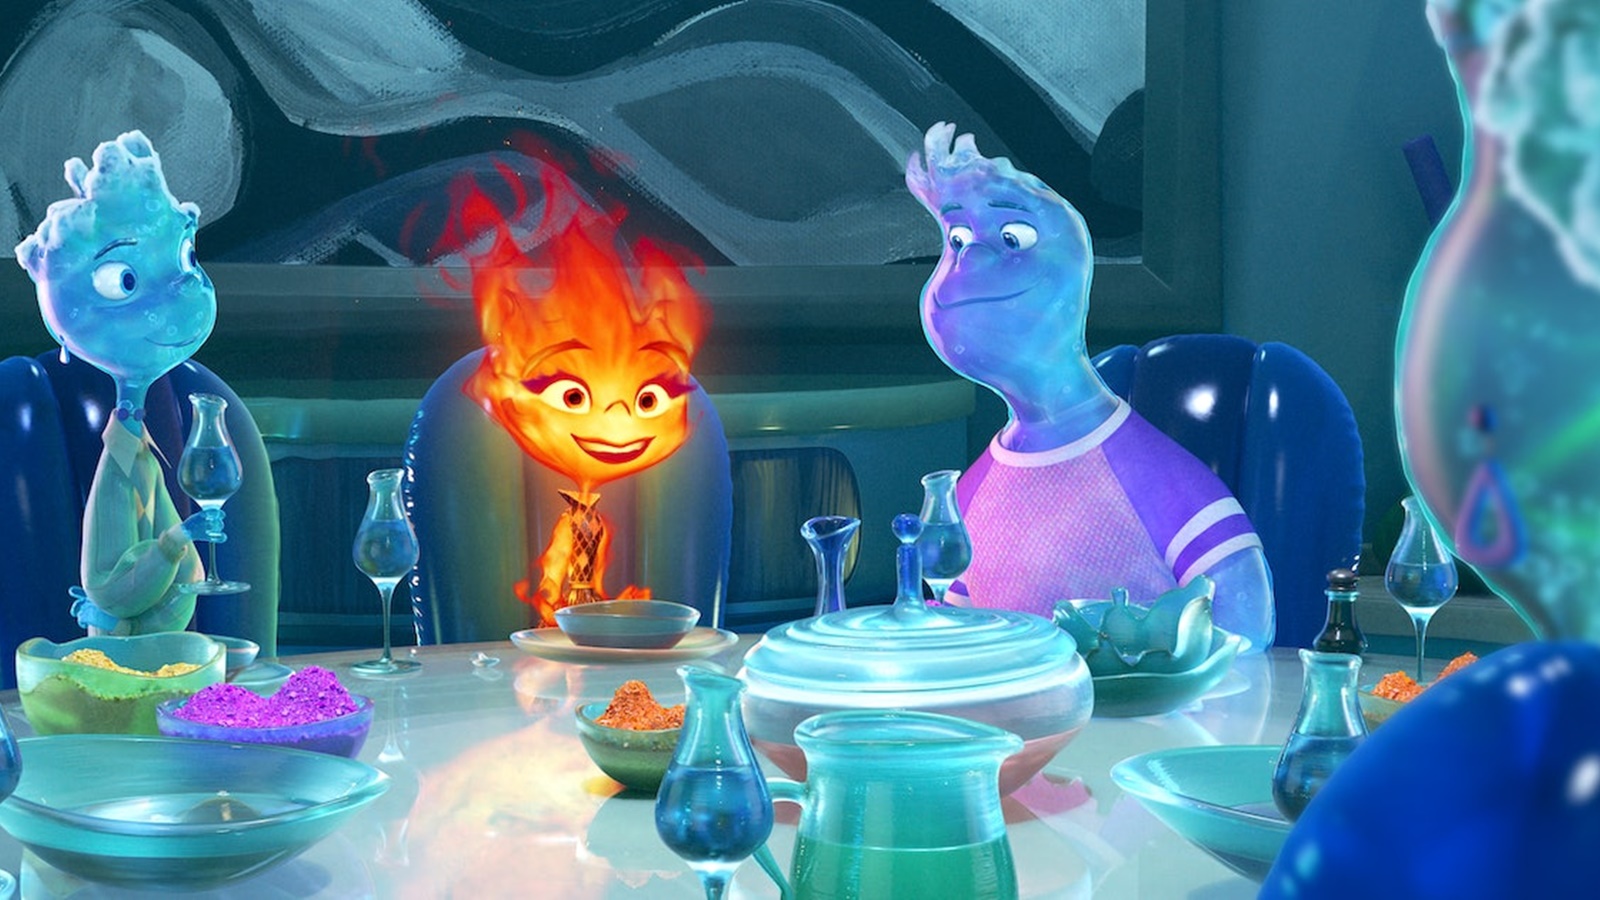 Elemental: il regista Peter Sohn spiega in che modo il film Pixar è ispirato alla sua vita